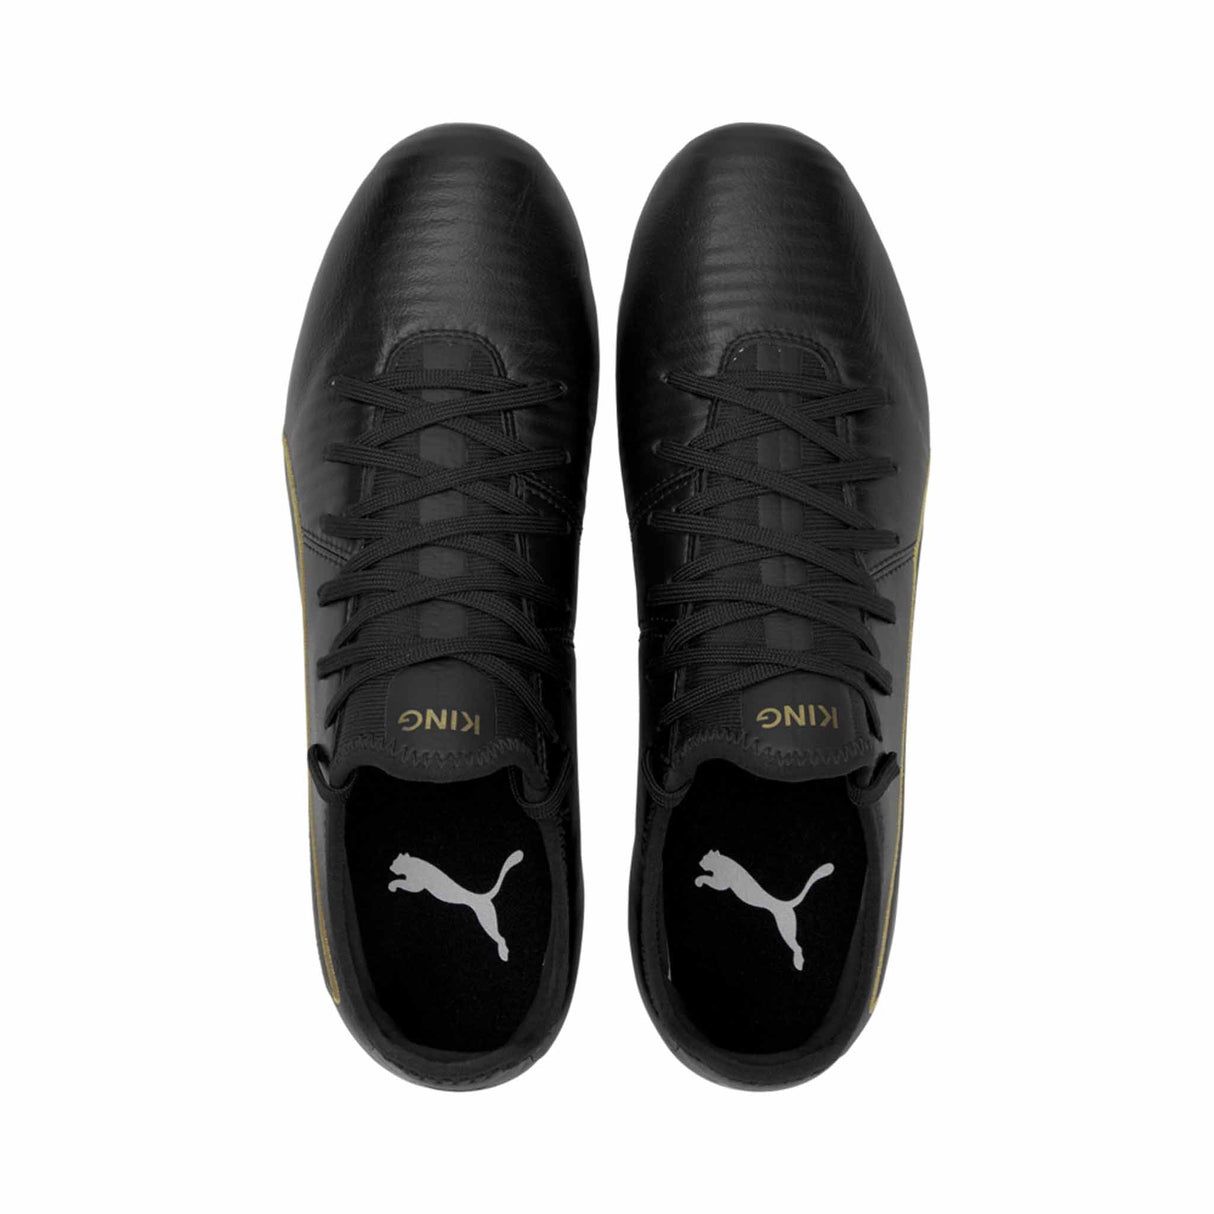 Puma King Pro FG Chaussures de soccer à crampons Noir/Or vue de haut